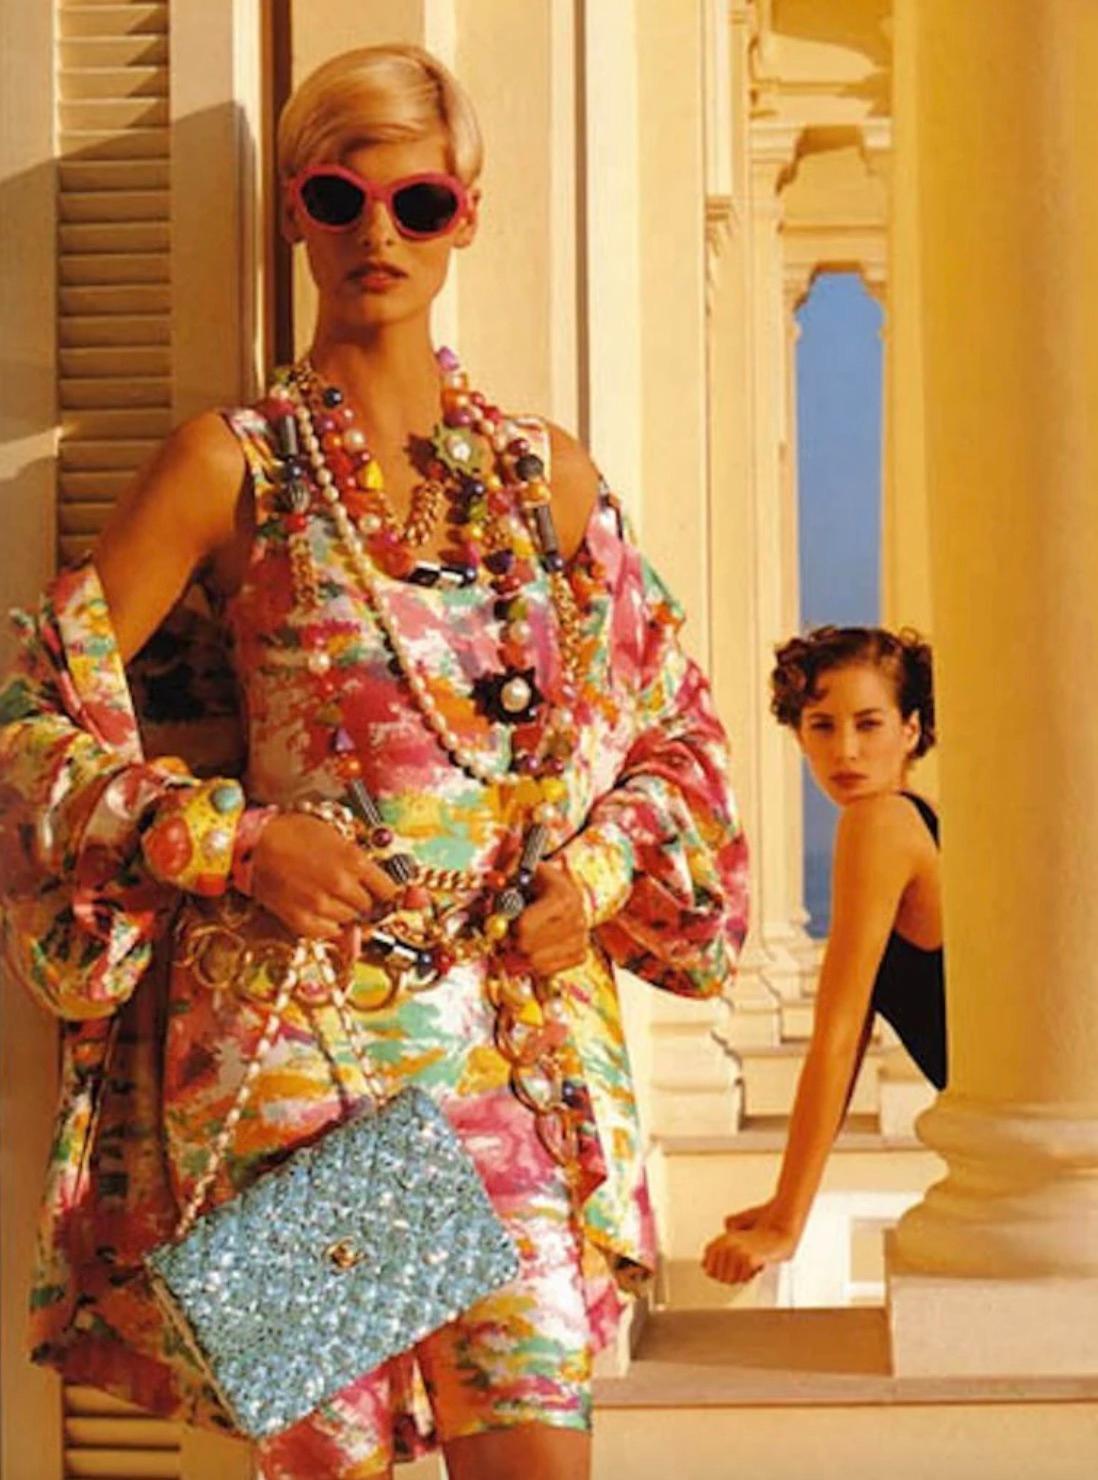 Découvrez un véritable bijou : le sac du soir Chanel à bandoulière moyenne de la collection emblématique printemps/été 1991, célèbre dans les publicités avec Linda Evangelista. Il est orné d'accessoires plaqués or et de la chaîne classique